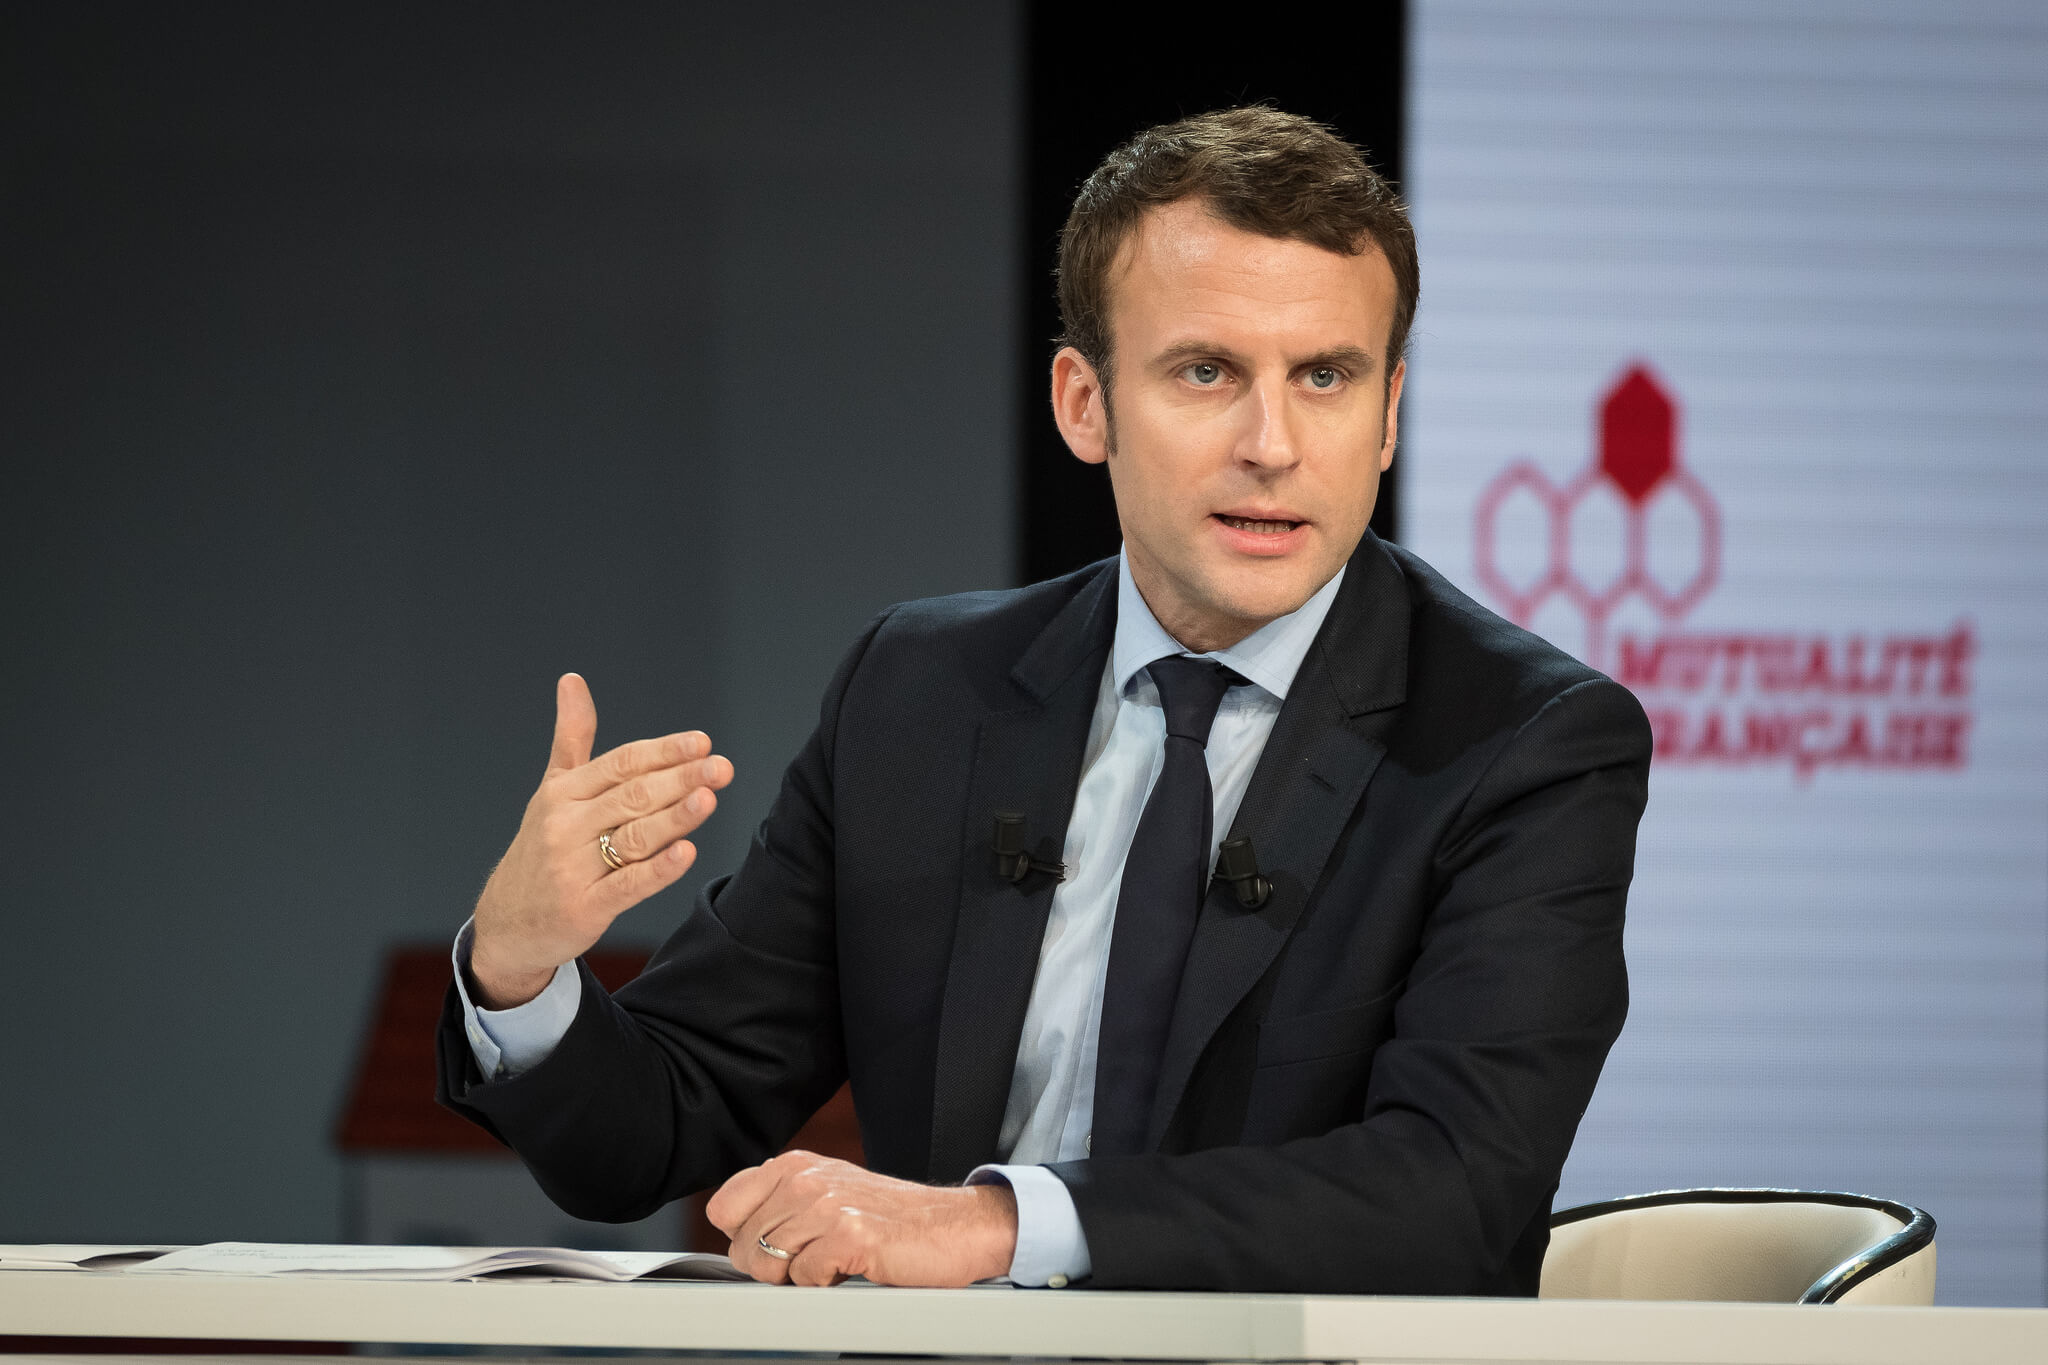 Macron's next steps for France. Source: Mutualité Française / Flickr